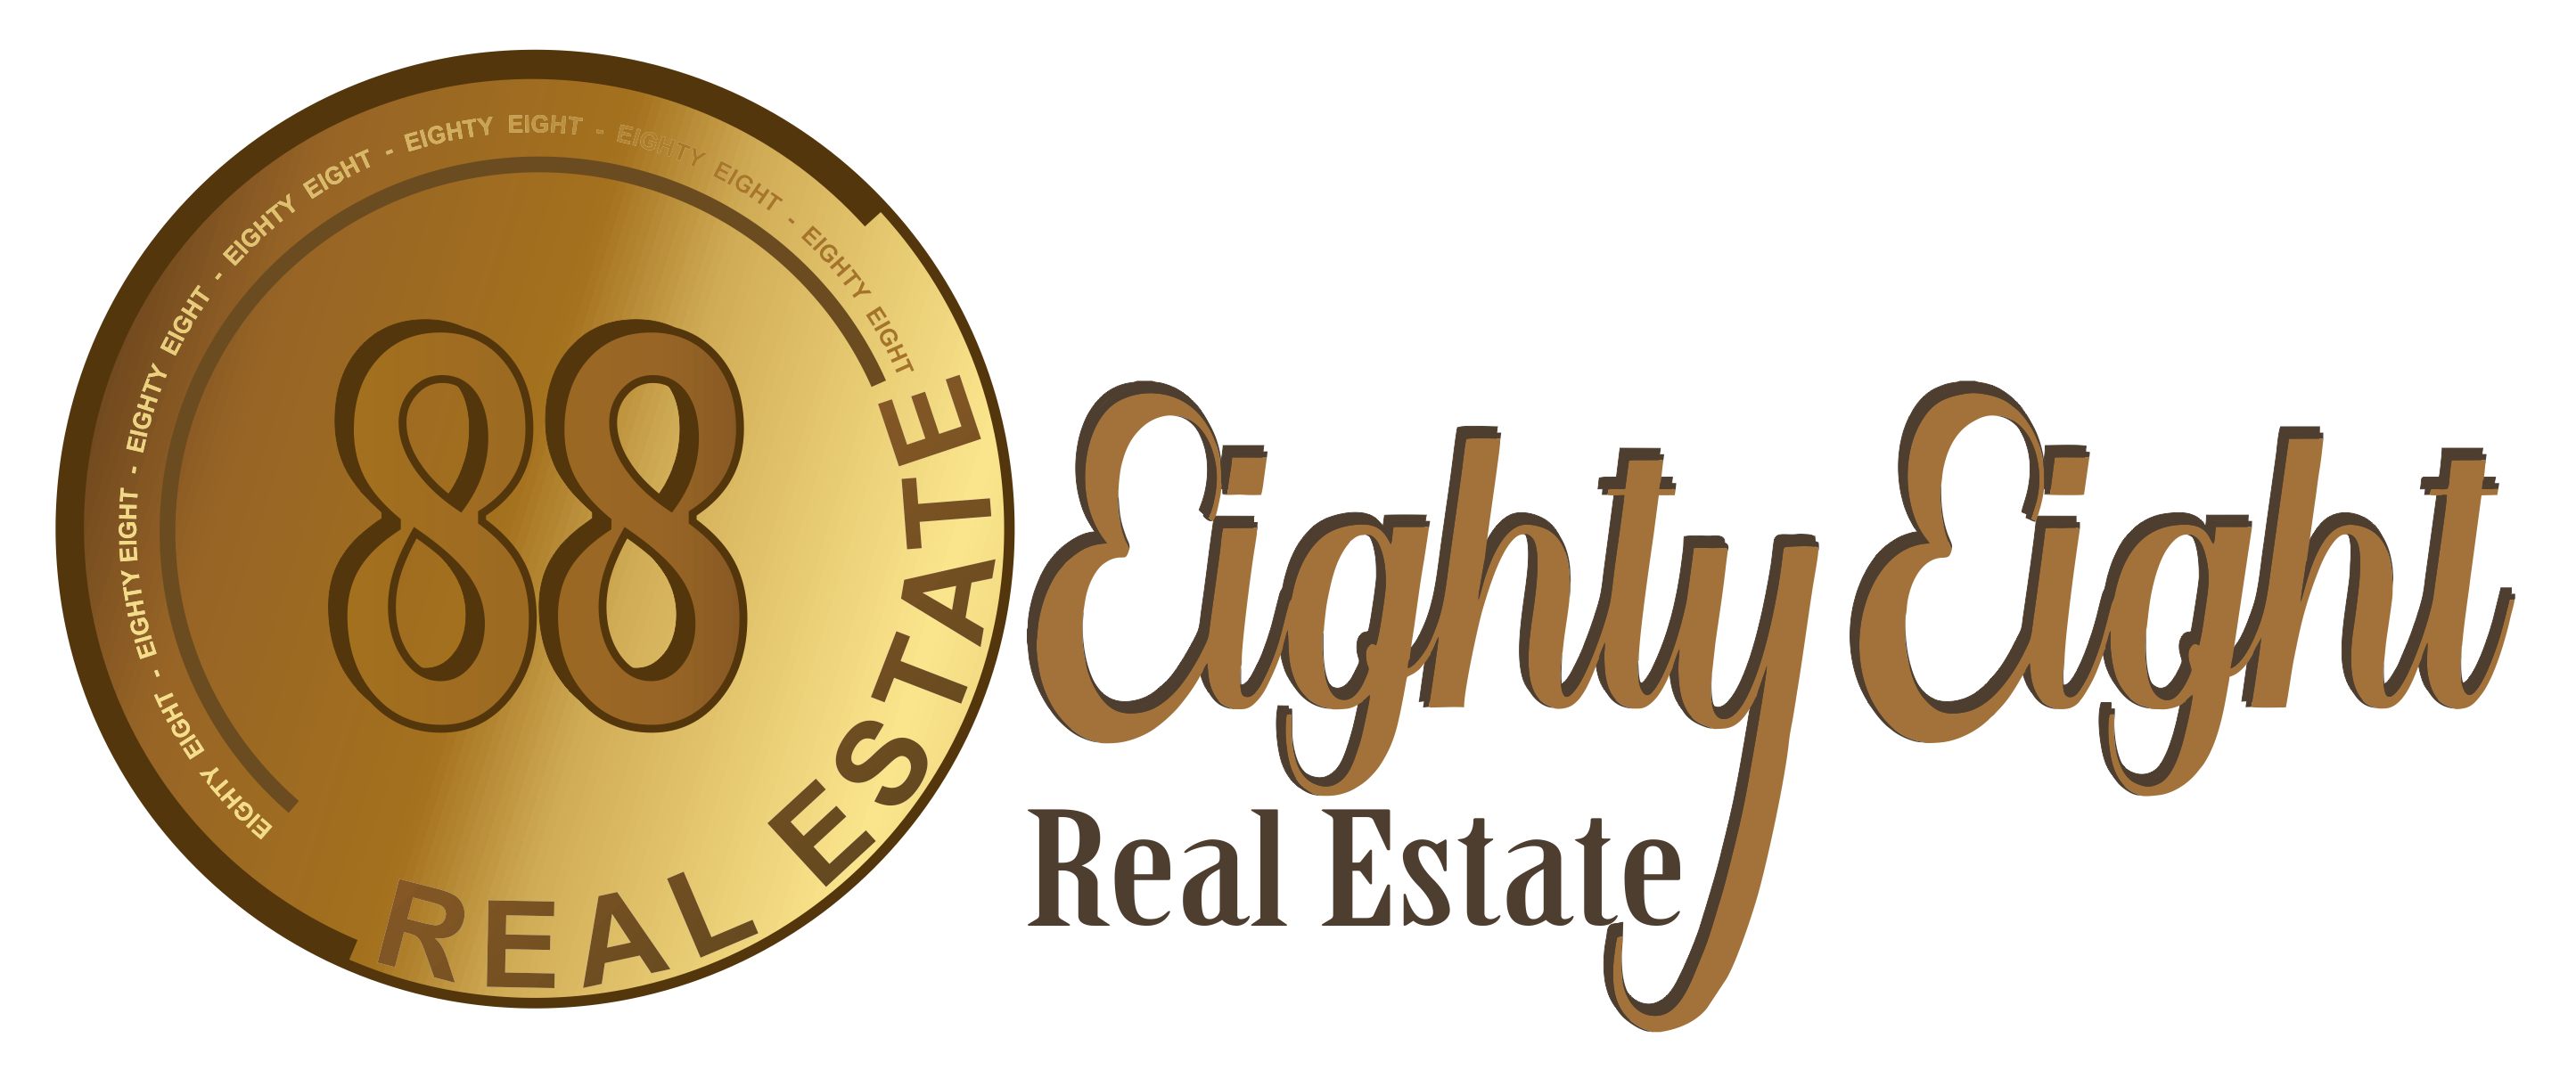 Real Estate Agency 88 Real Estate - DOCKLANDS